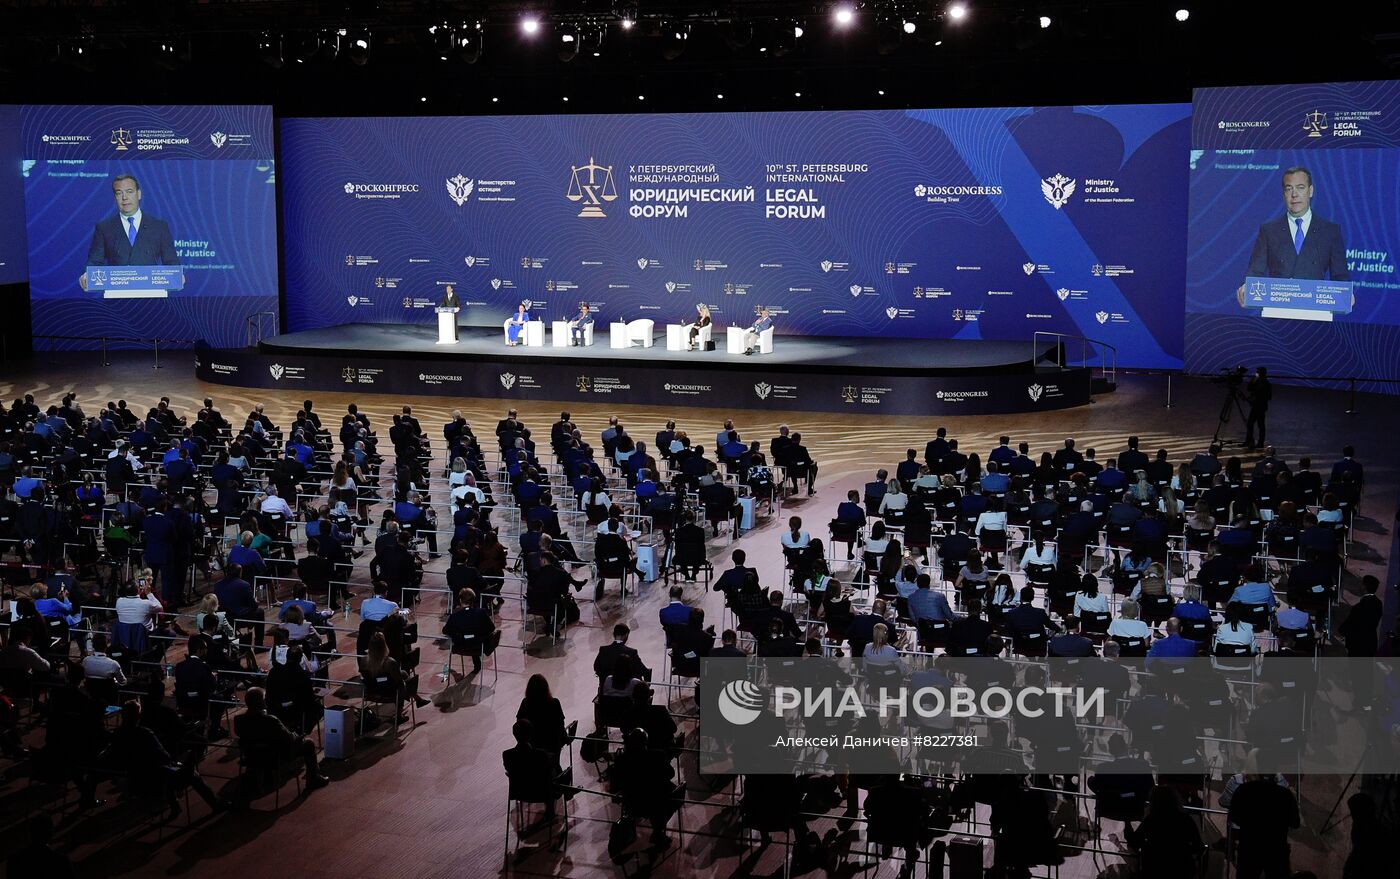 Петербургский международный юридический форум-2022